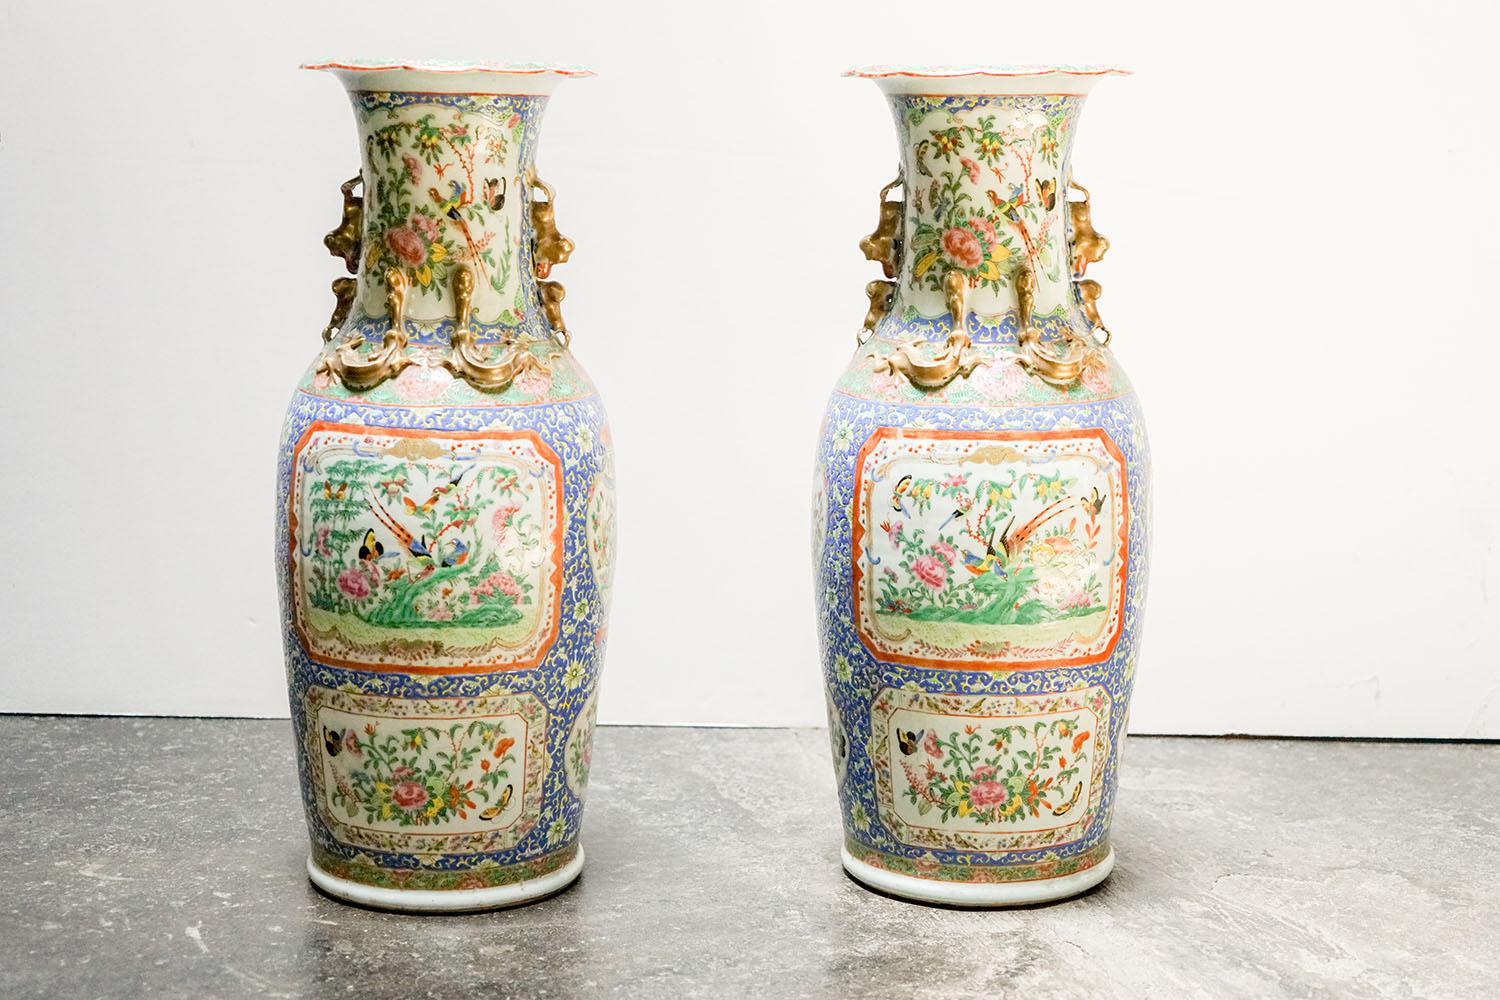 Paar große Vasen aus chinesischem Porzellan, ca. Ende 1800.